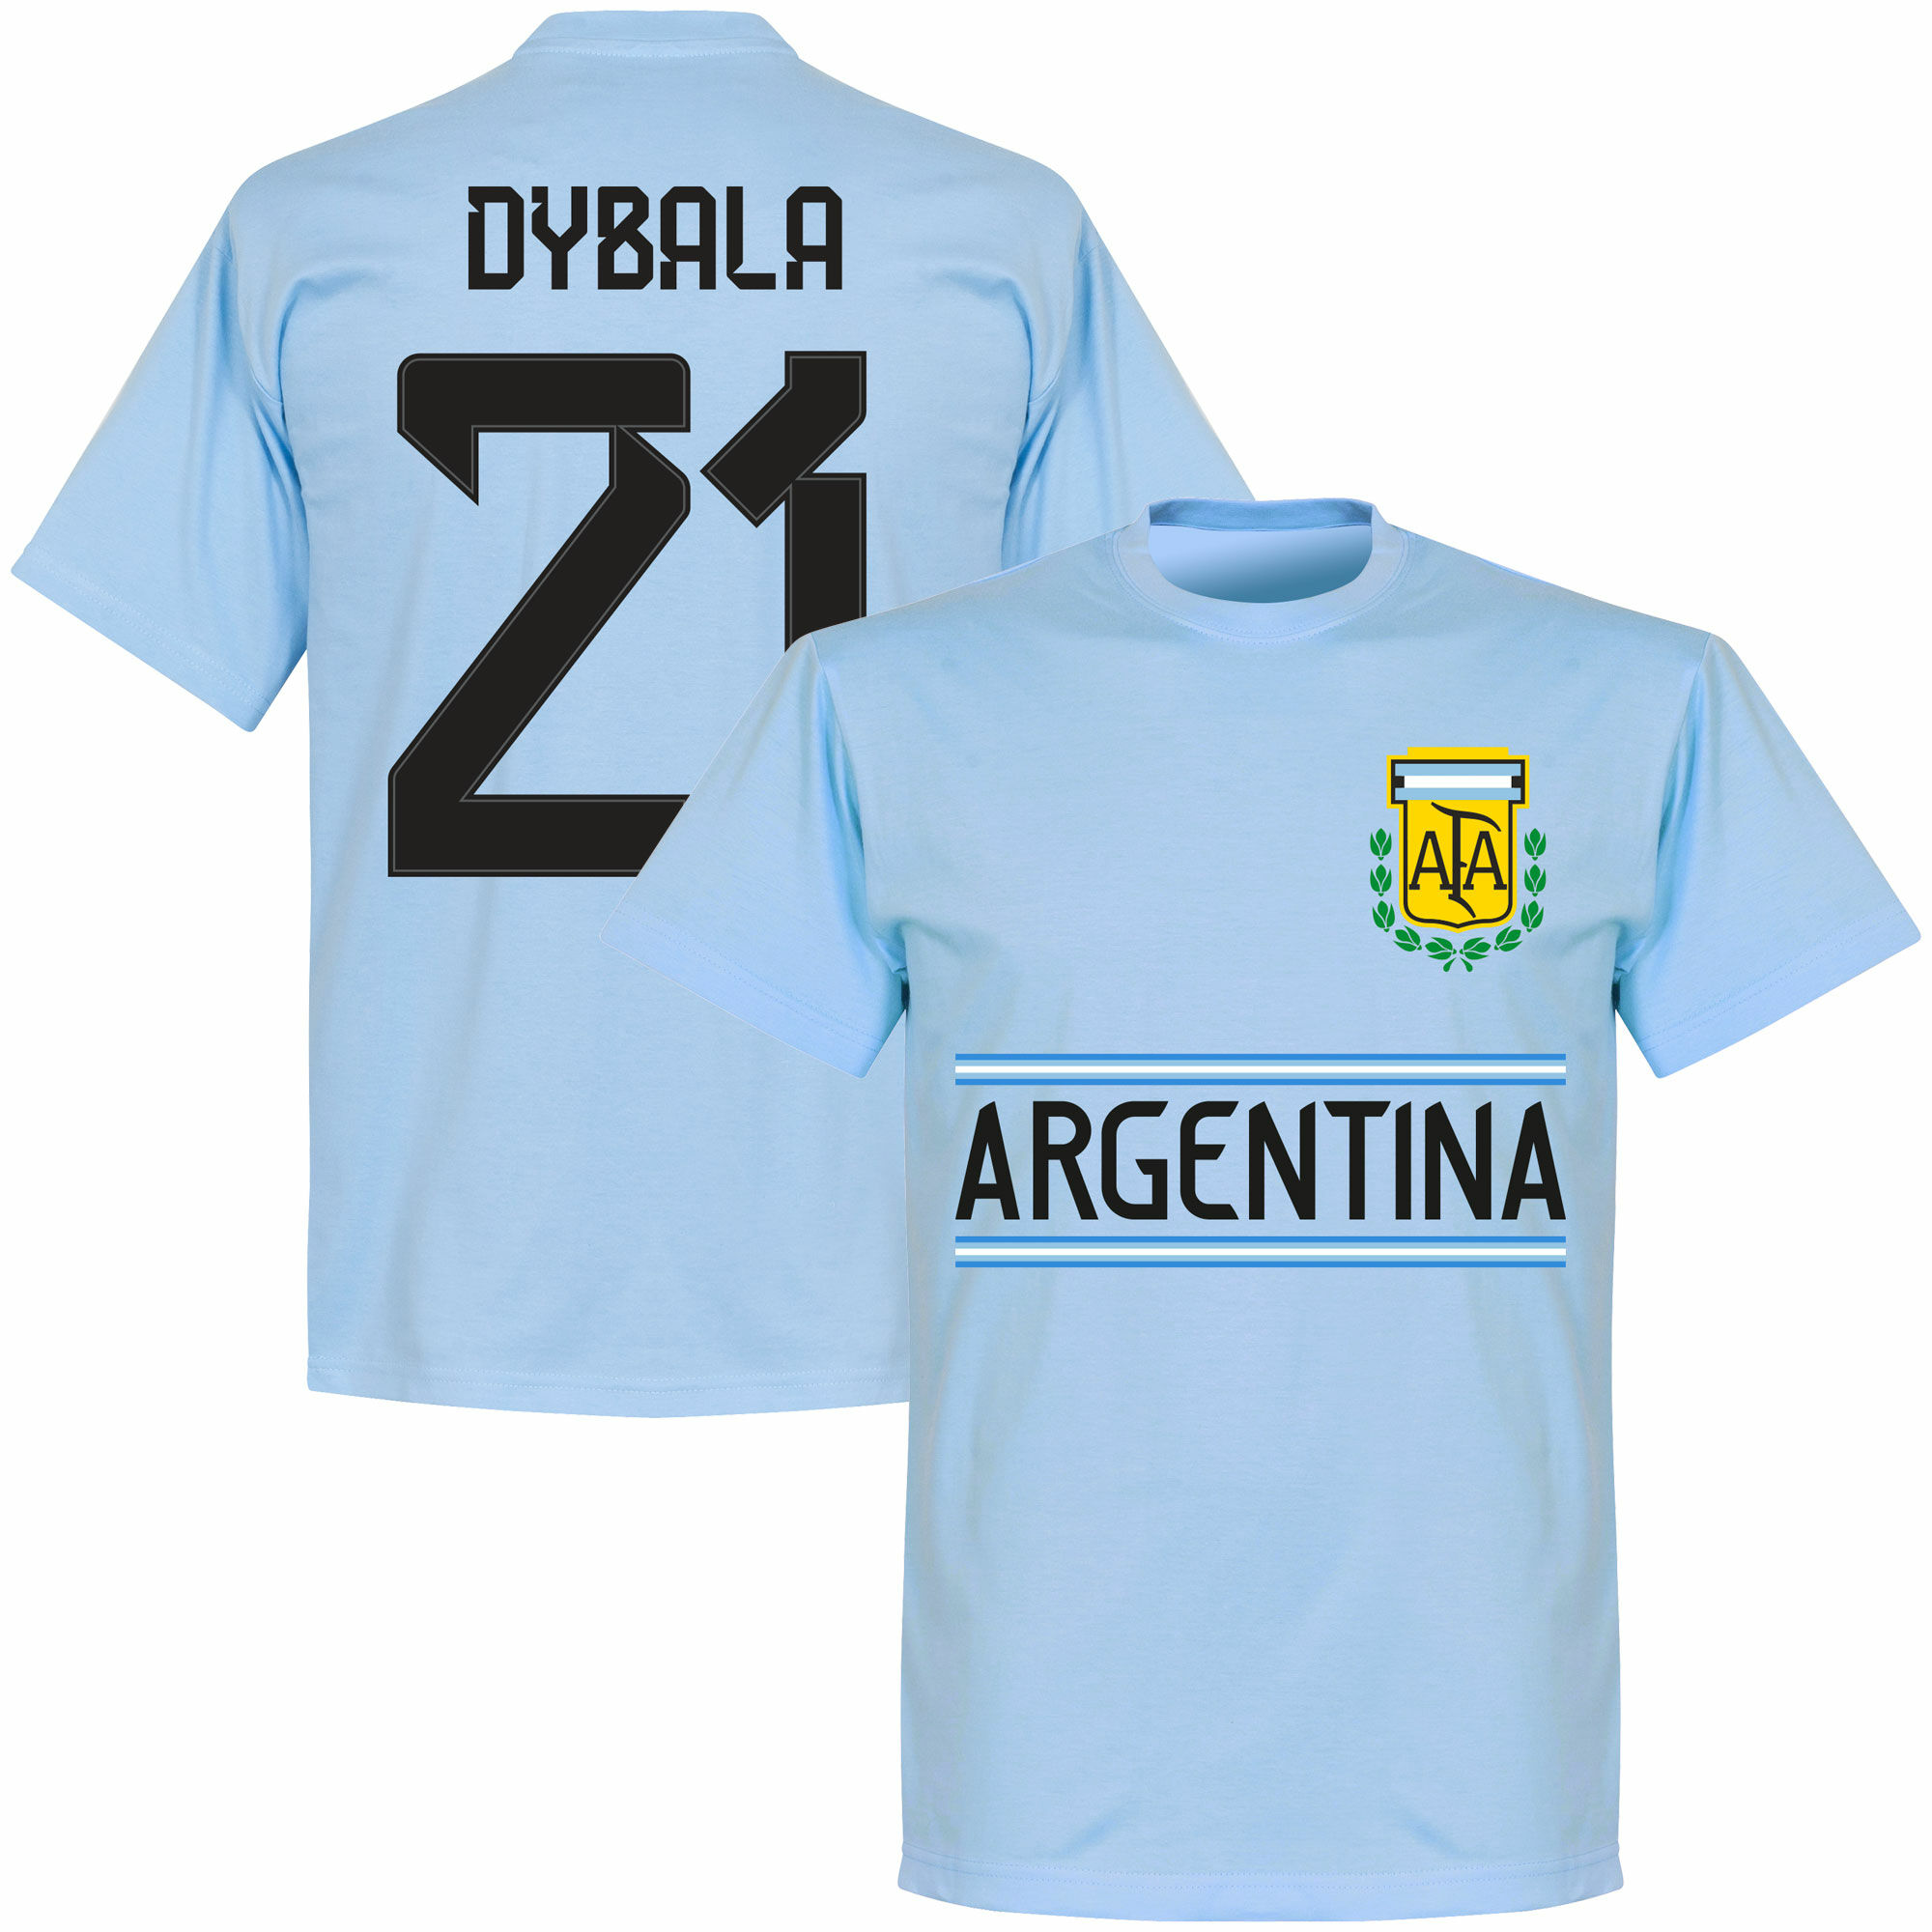 Argentina - Tričko - Paulo Dybala, číslo 21, modré